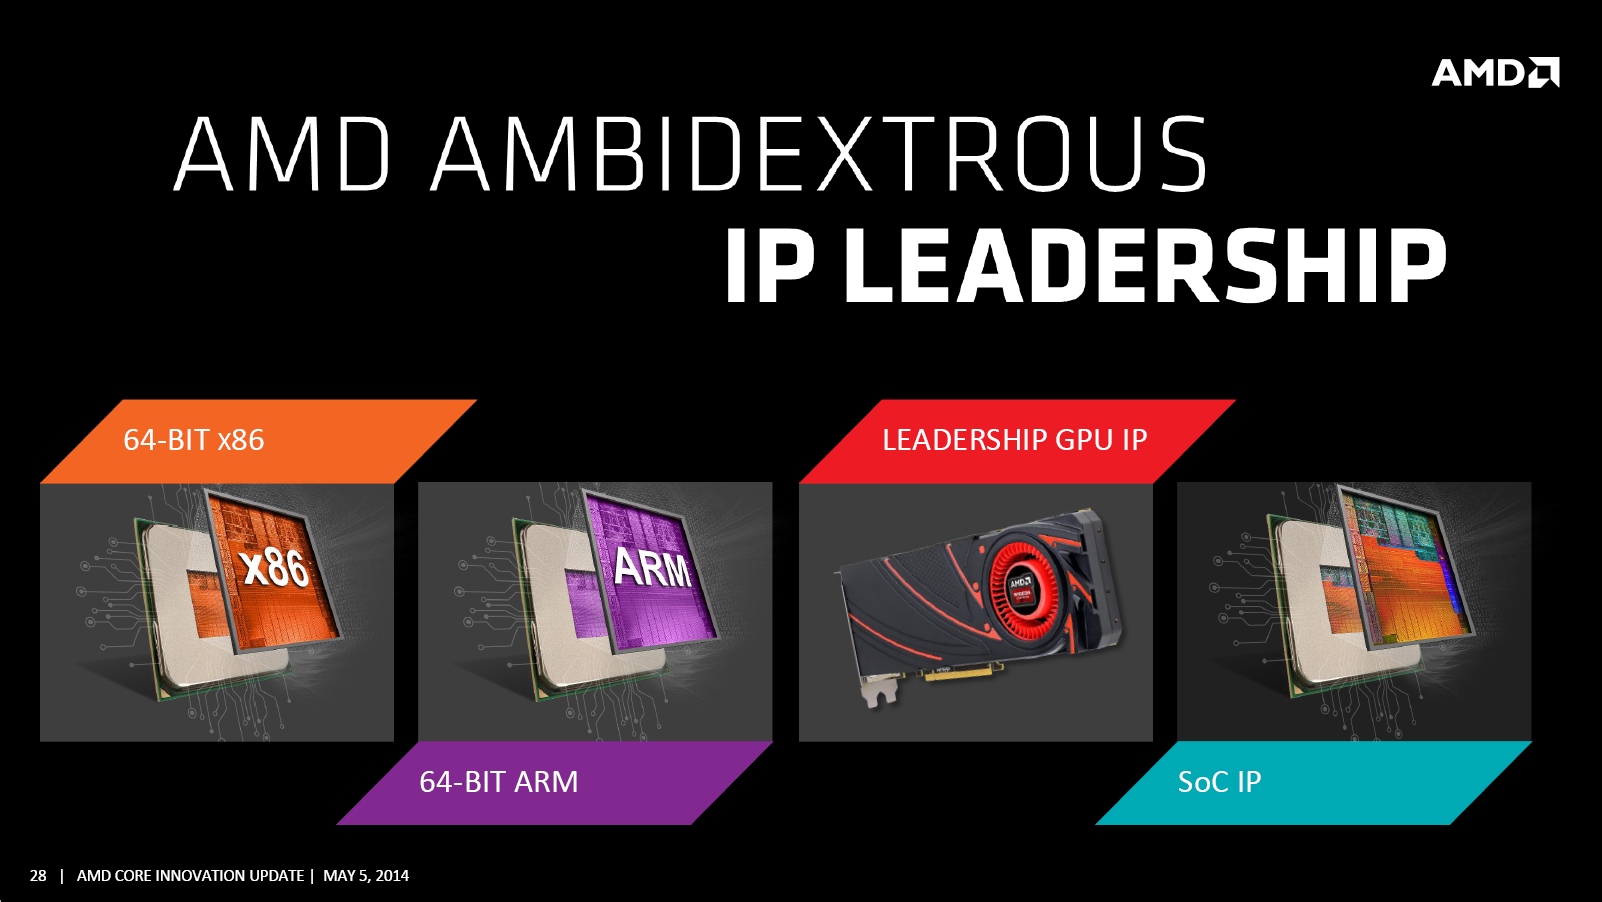 Immagine pubblicata in relazione al seguente contenuto: AMD presenta la roadmap basata sulla strategia ambidestra (ARM & x86) | Nome immagine: news21164_AMD-Core-Innovation-Update_4.jpg